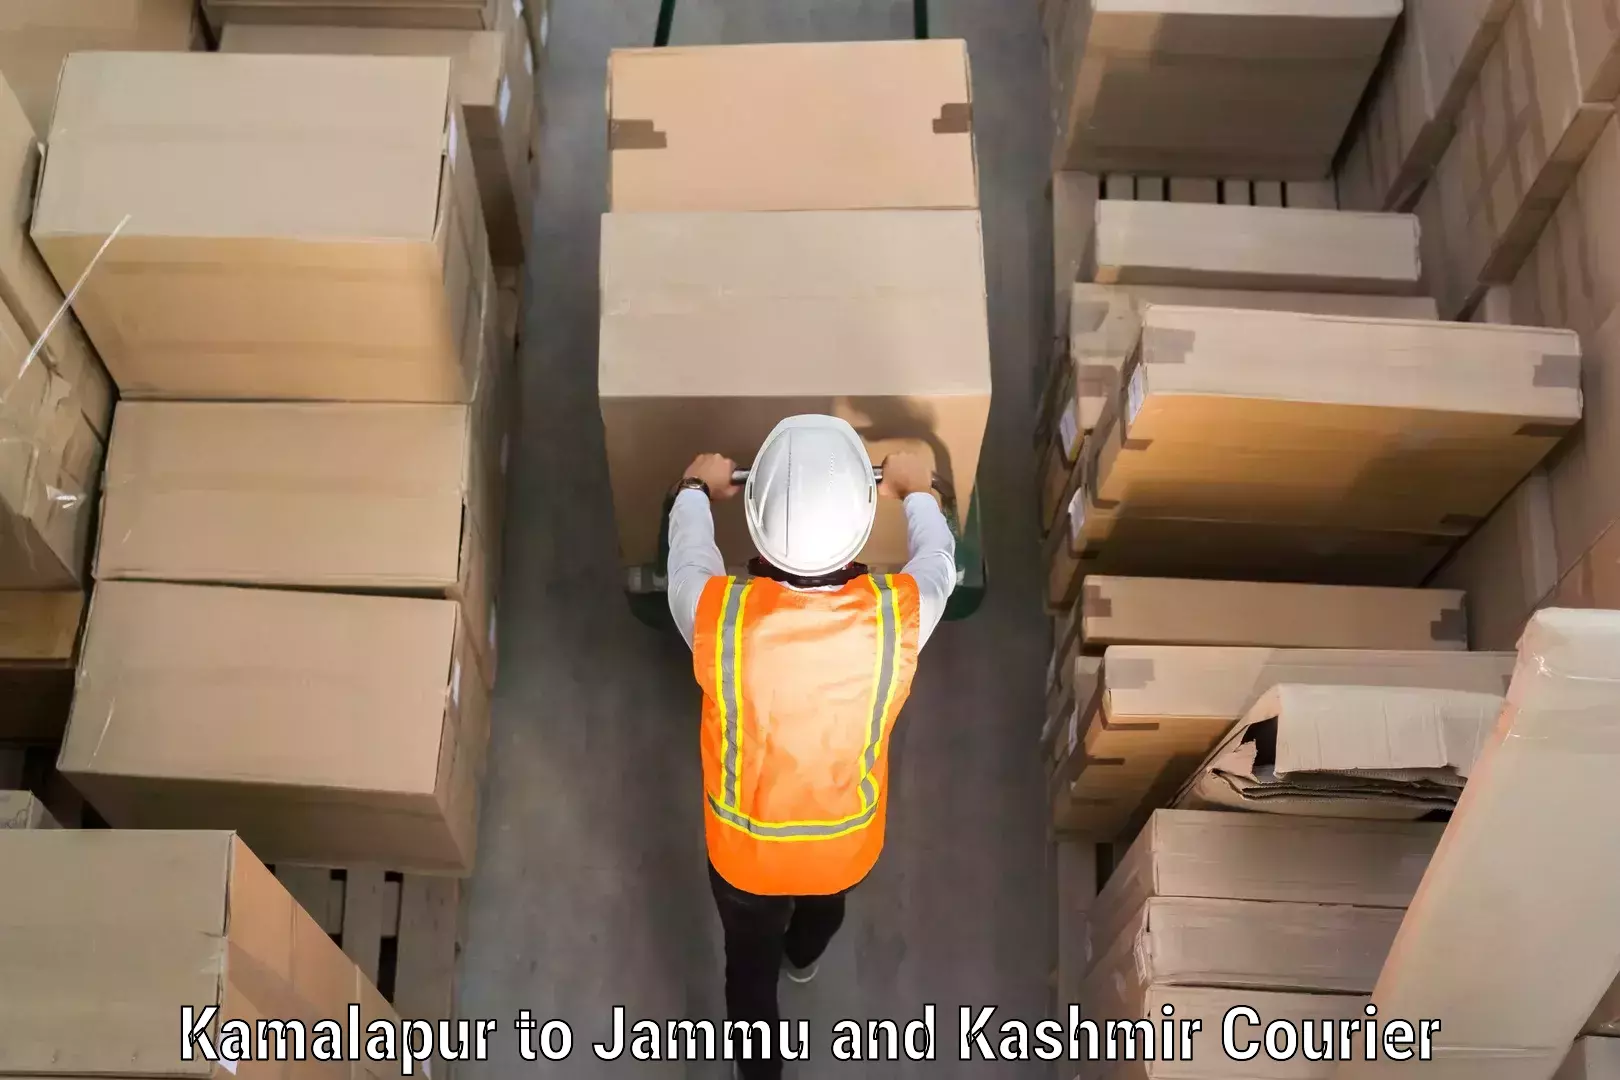 Baggage shipping service Kamalapur to Sunderbani